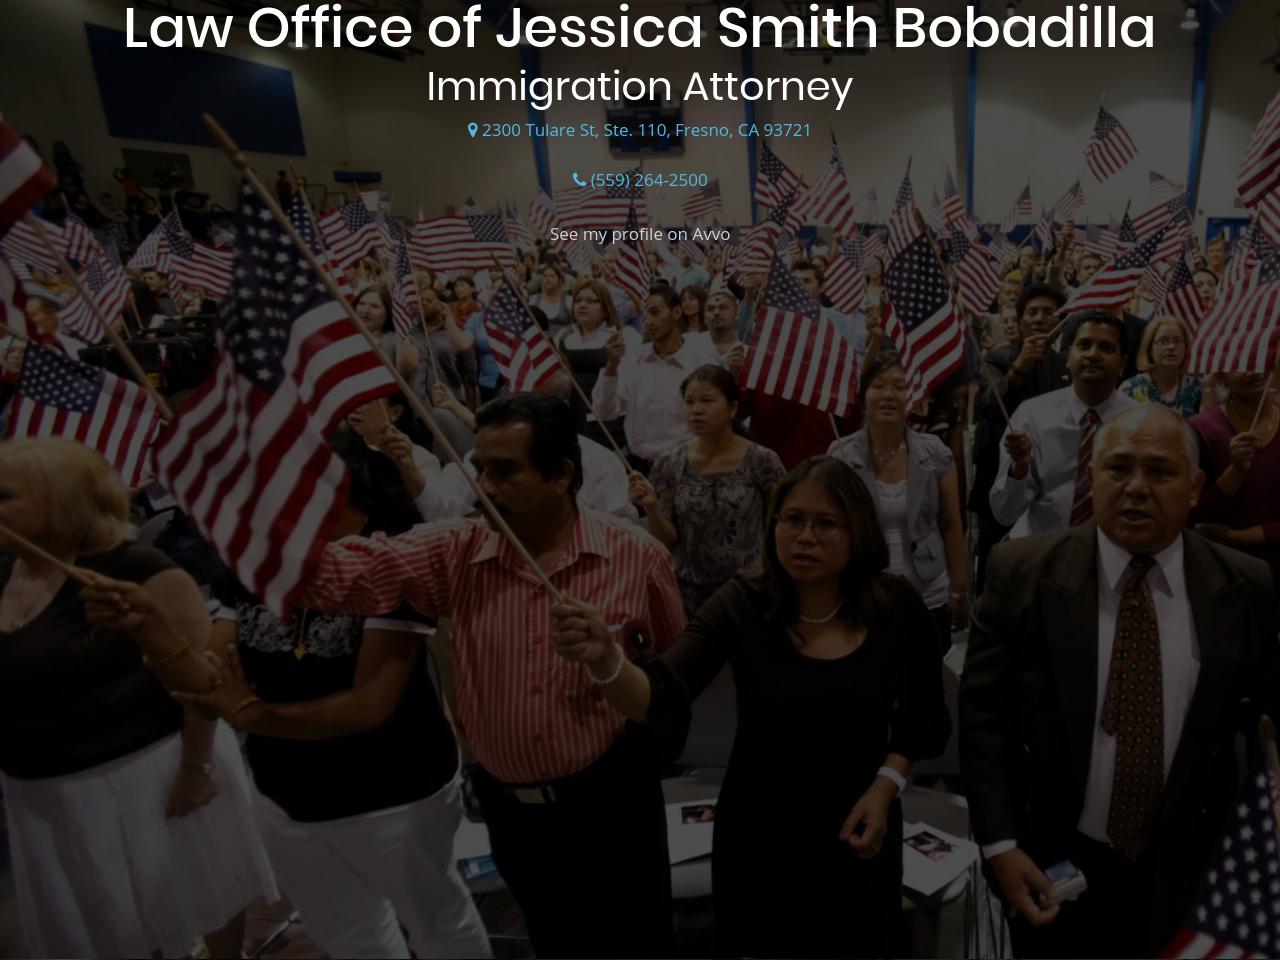 Bobadilla Jessica Smith Law Office Of - Fresno CA Lawyers